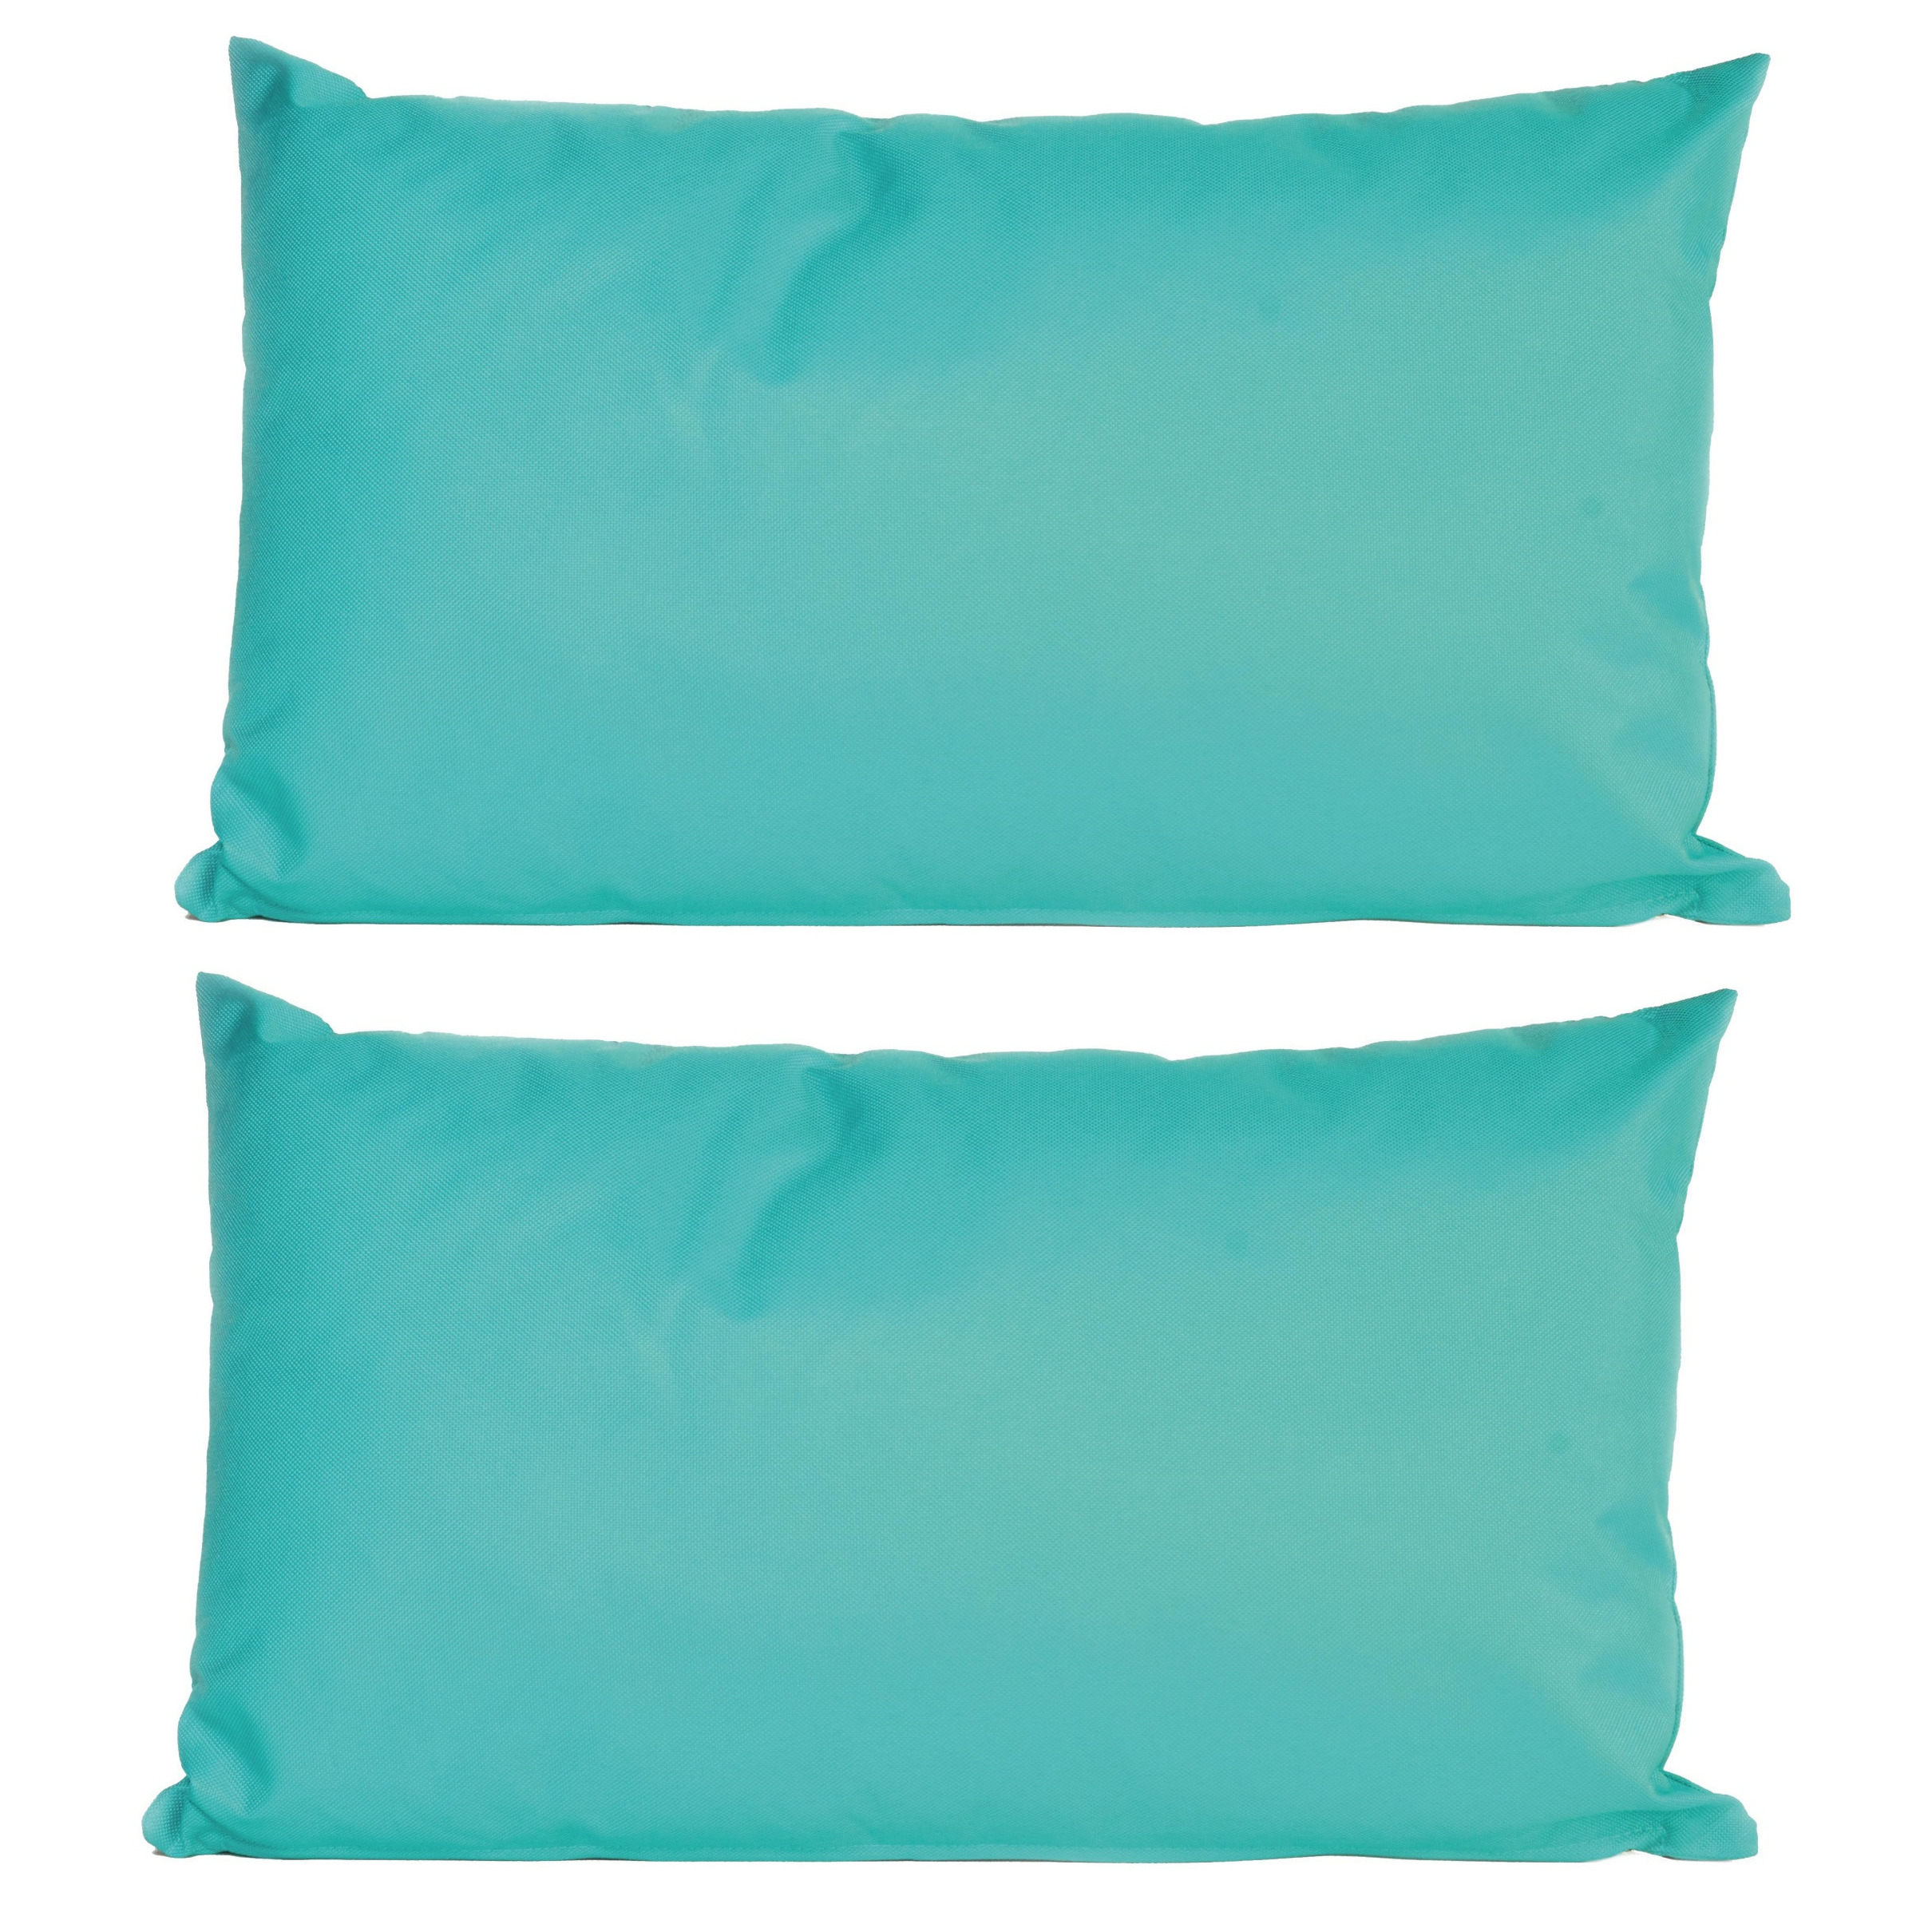 2x Bank-sier kussens voor binnen en buiten in de kleur aqua blauw 30 x 50 cm